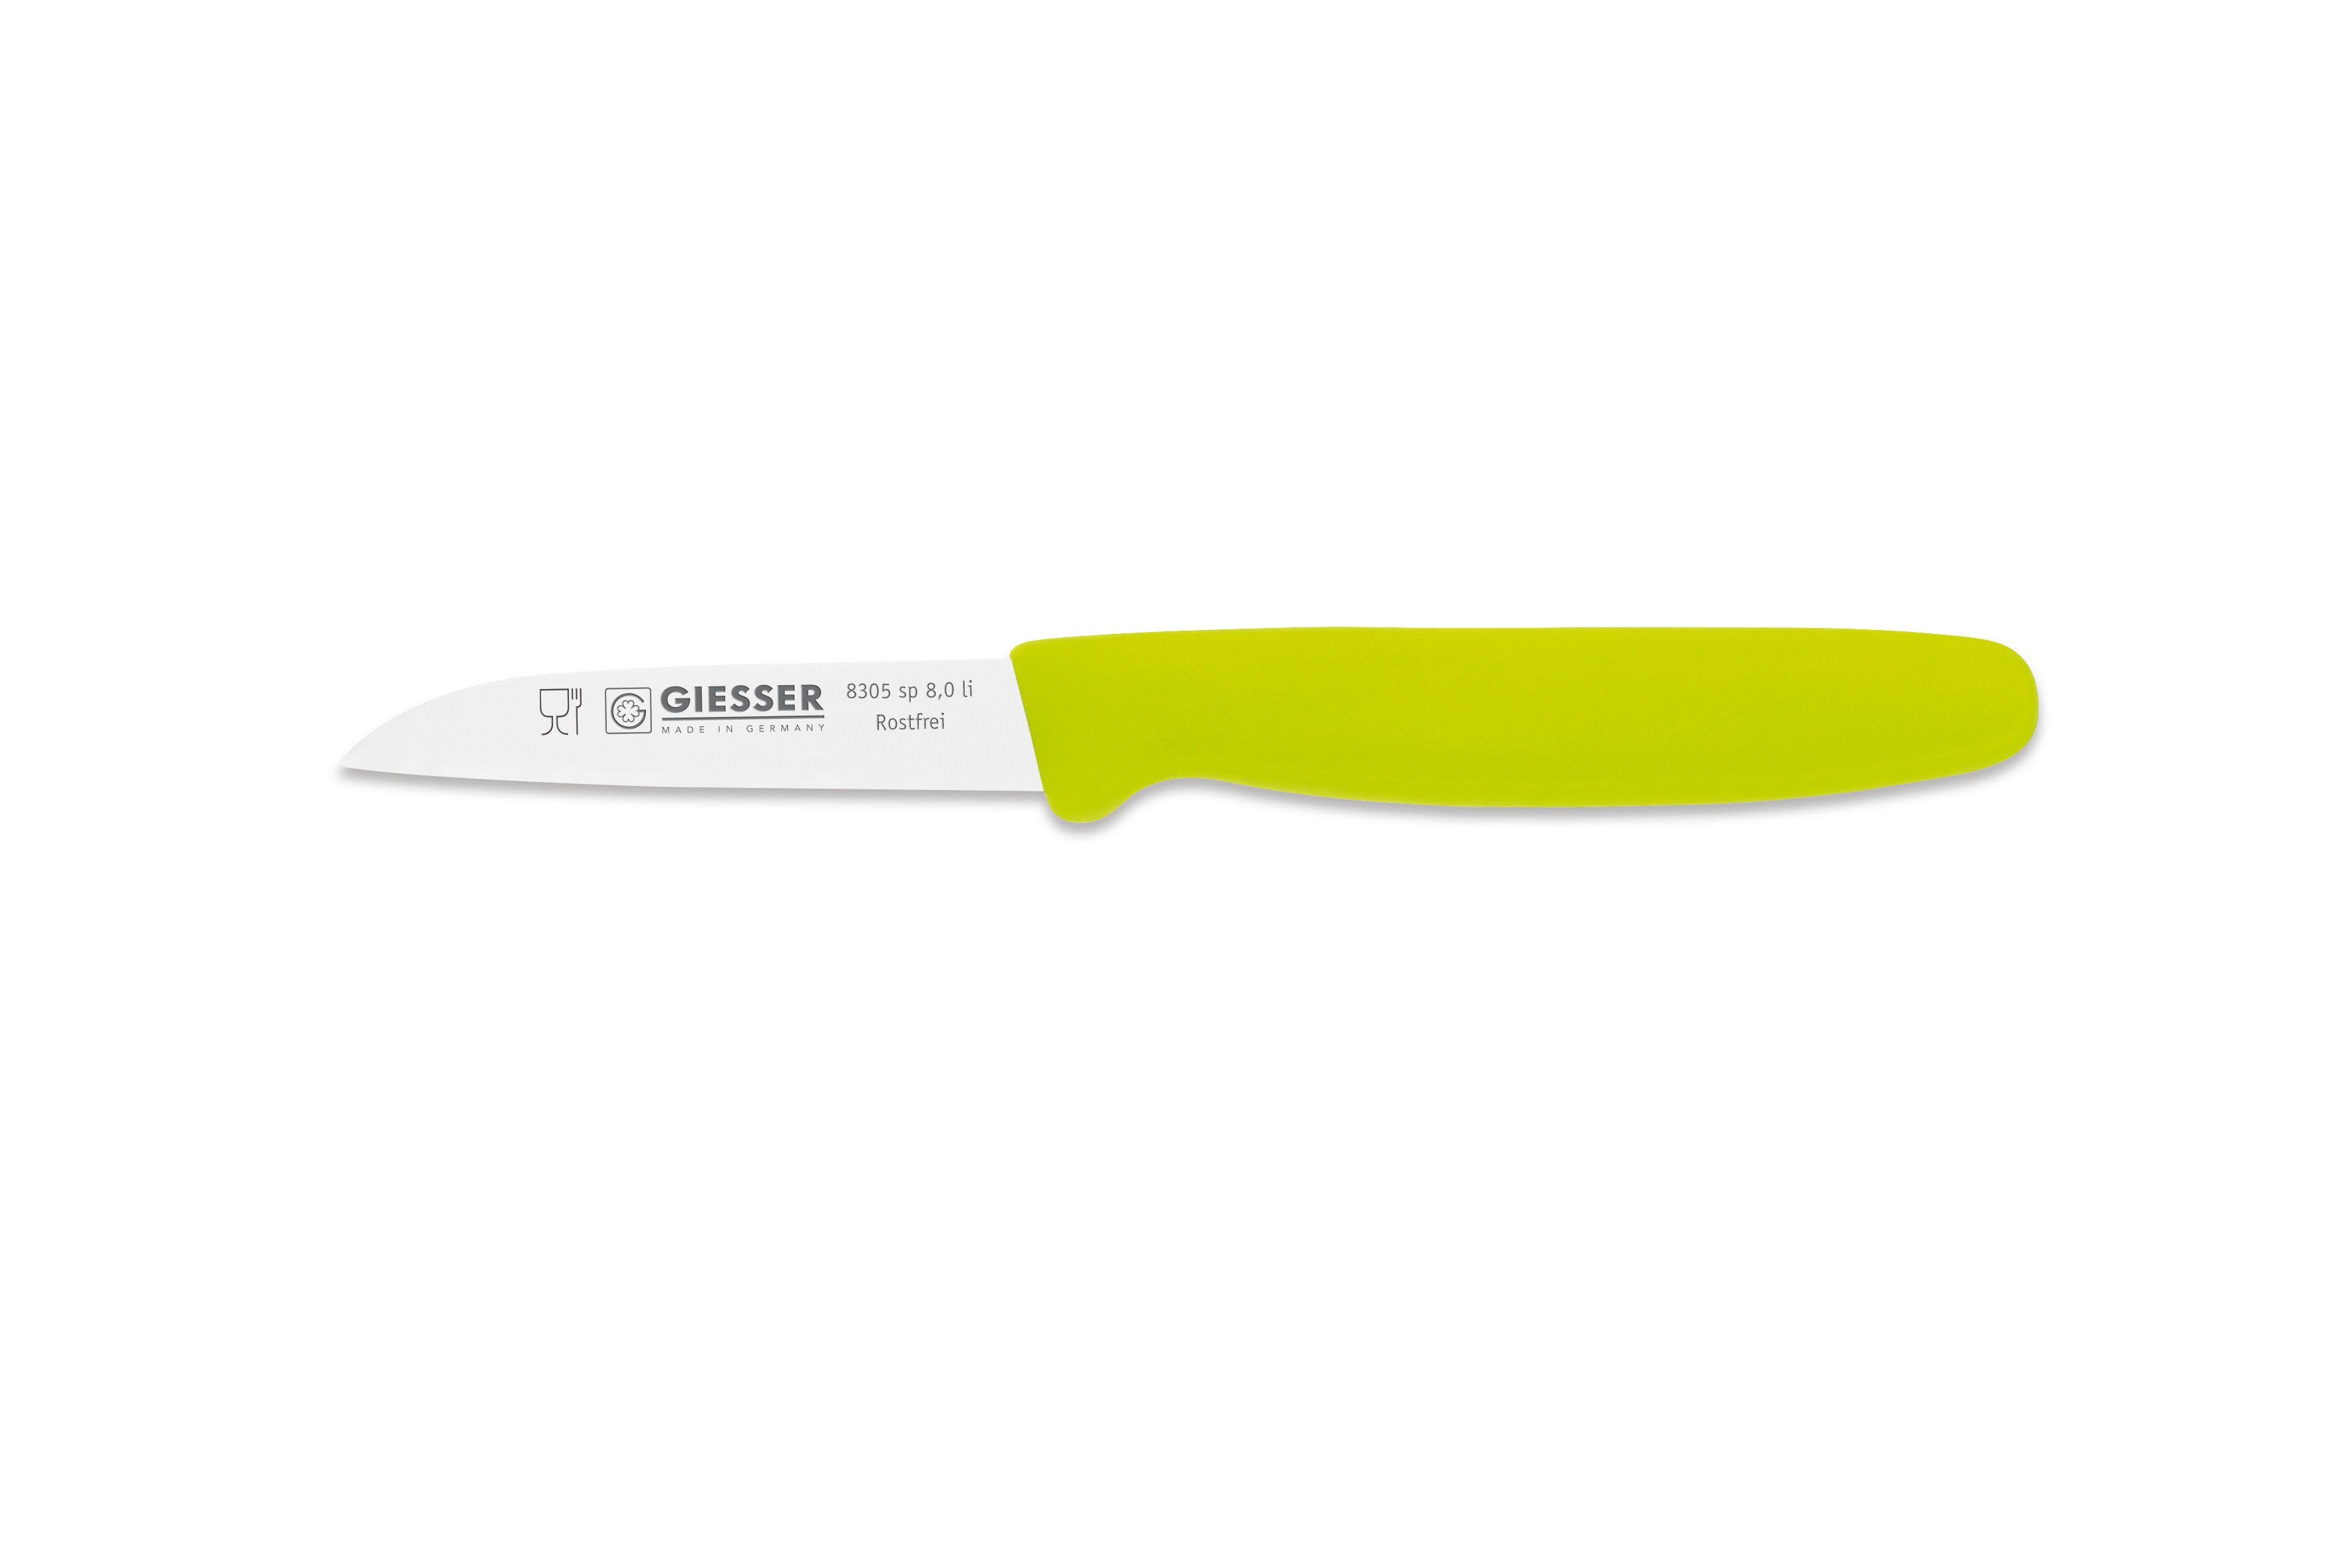 Giesser Messer Gemüsemesser Küchenmesser 8305 sp 8 alle Farben, Küchenmesser gerade Schneide 8 cm, Made in Germany Limette